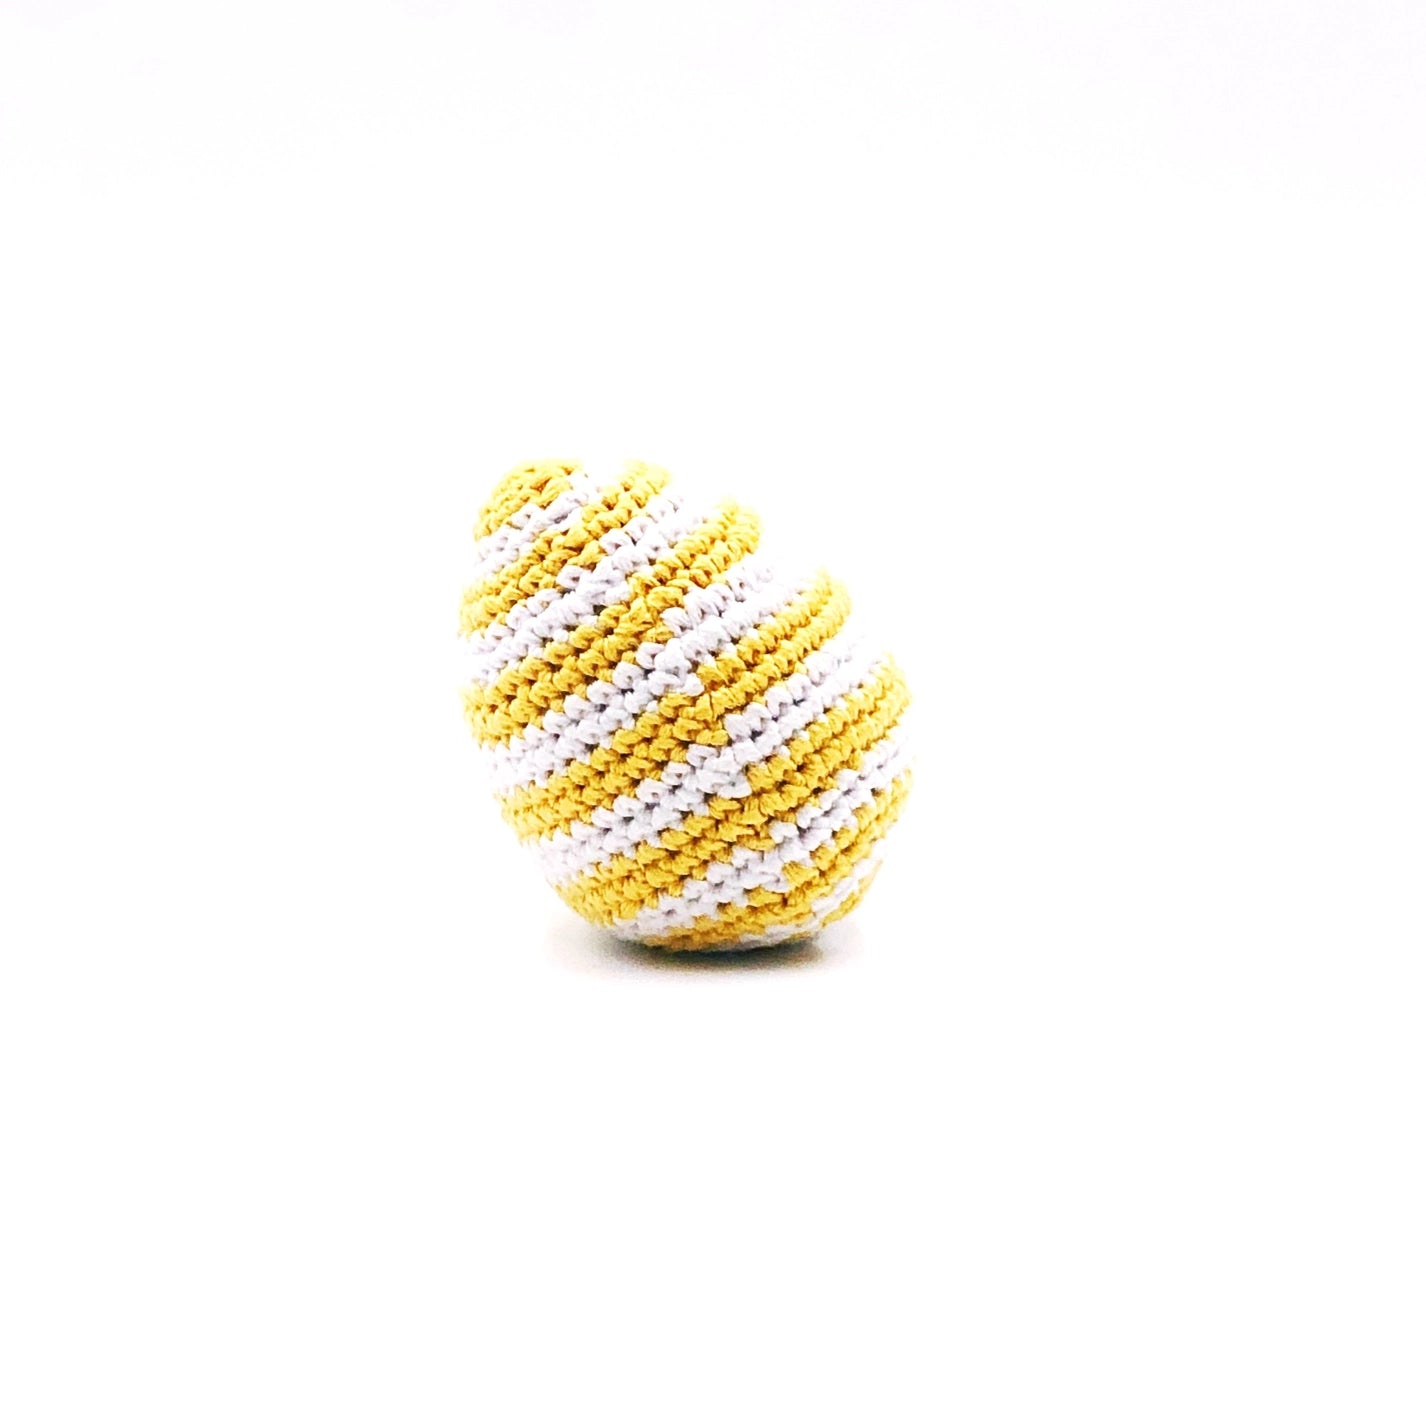 Crochet Easter Egg Toy